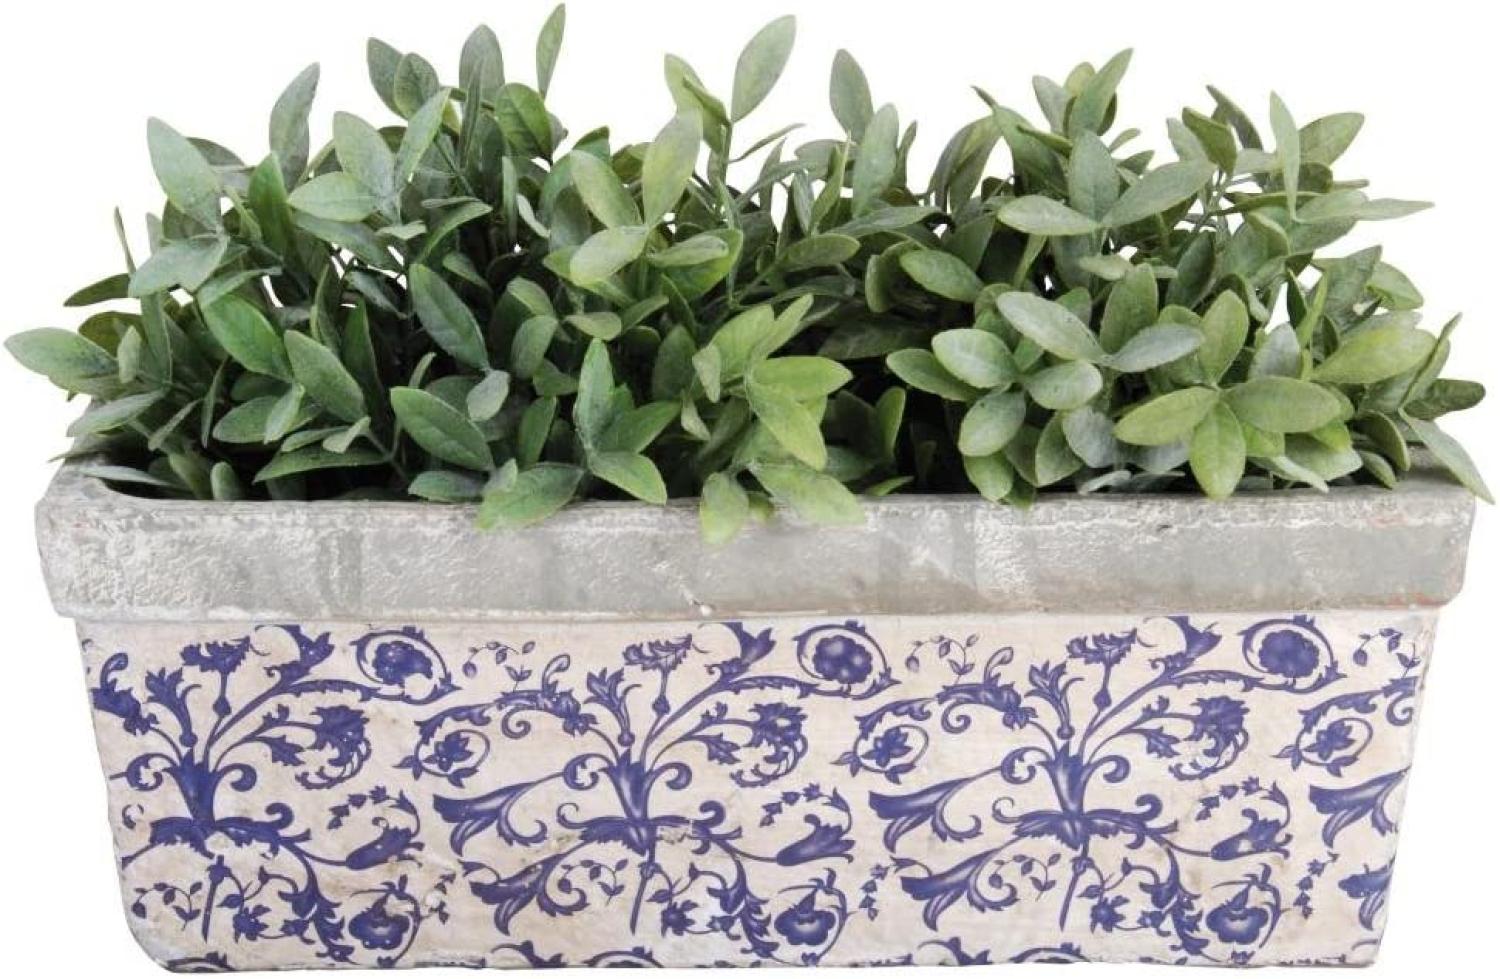 3 Stück Esschert Design Balkonkasten, Blumenkasten aus Keramik in blau-weiß, ca. 40 cm x 16 cm x 15 cm Bild 1